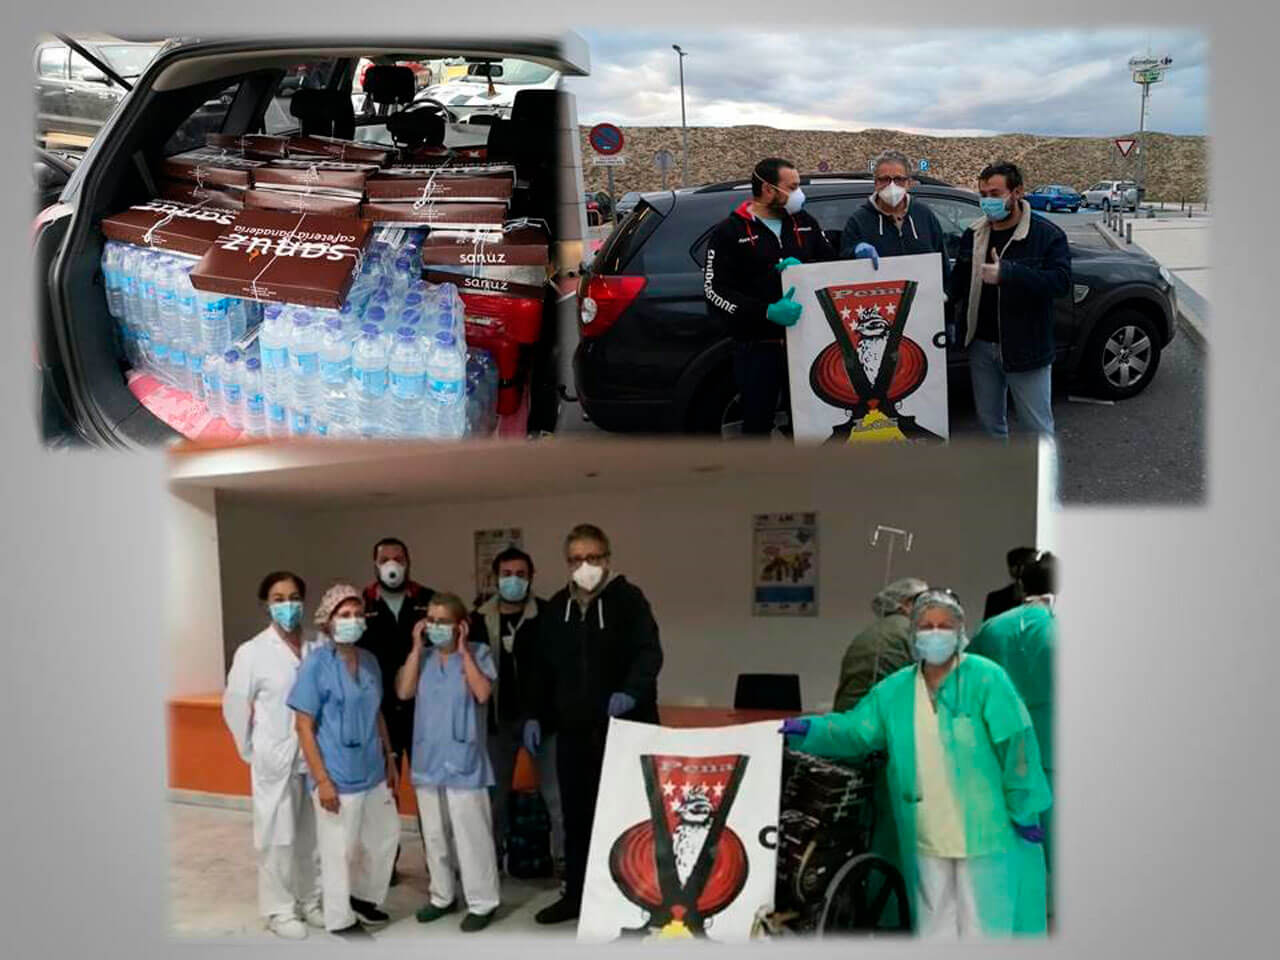 Seguimos donando...Las Sociedades de Cazadores Madrileñas Federadas solidarias en la Campaña contra el Covid19